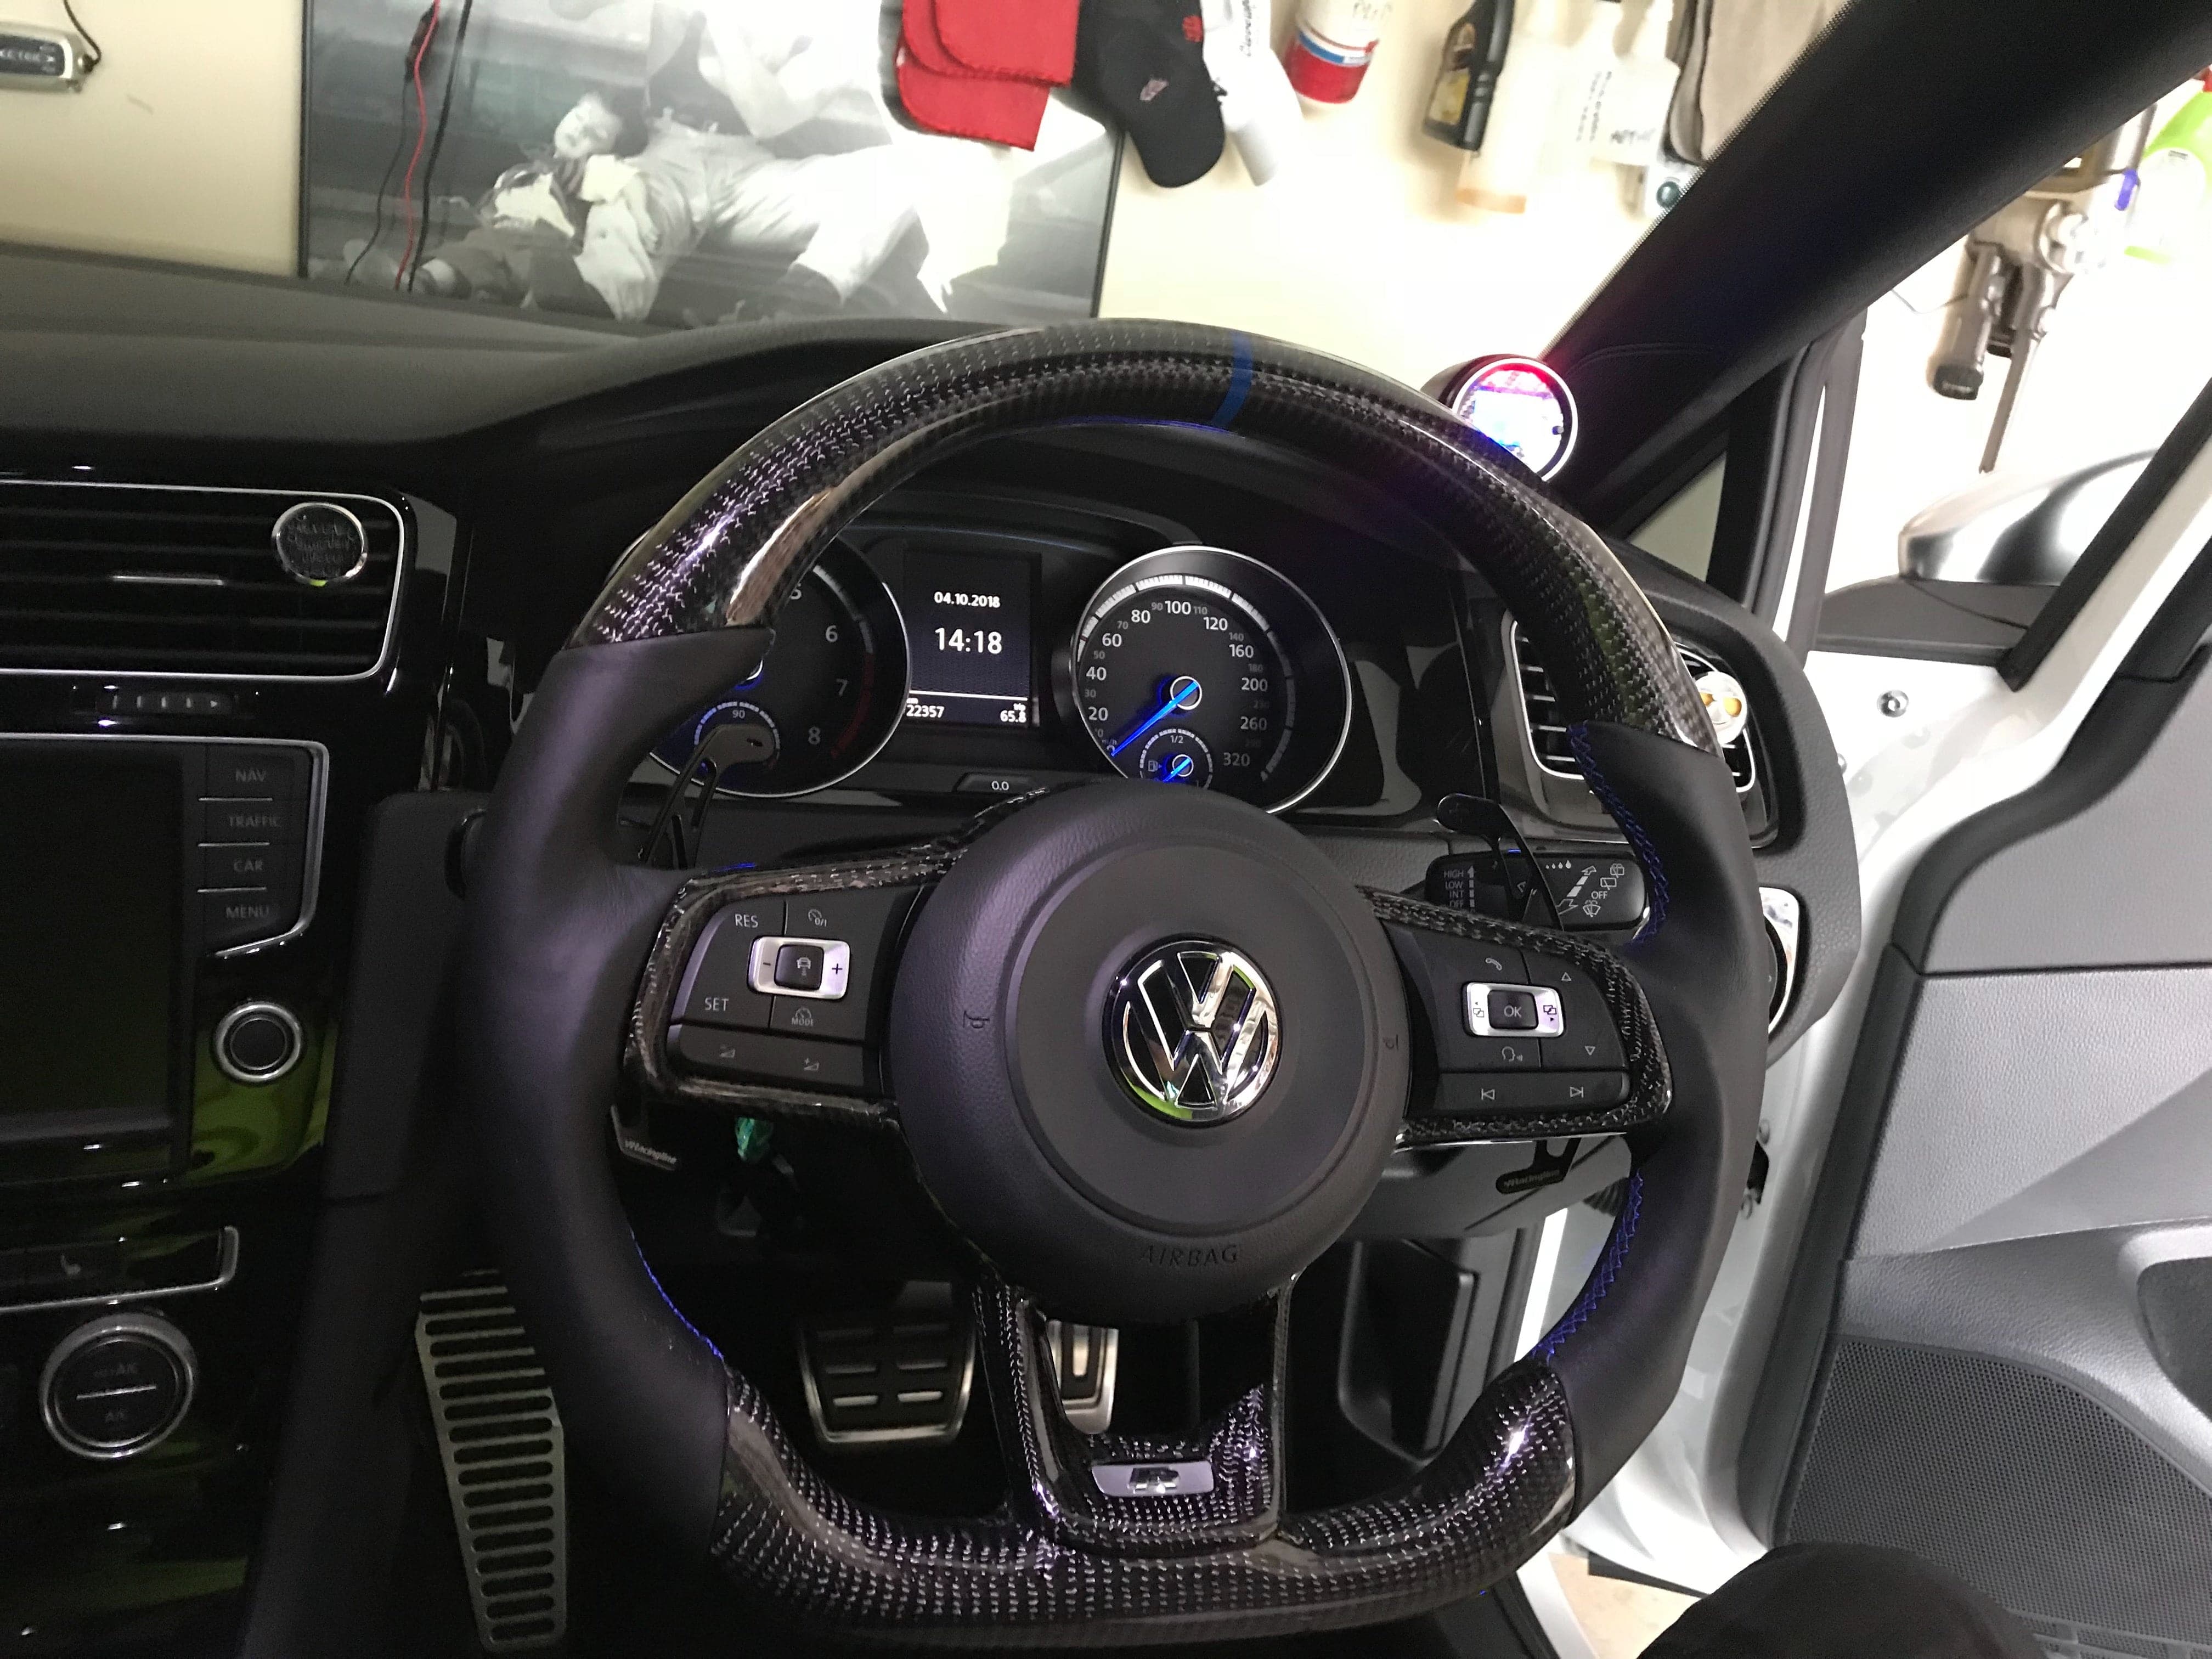 Lenkrad VW Golf Mk7/7.5 Carbon, 882,32 €